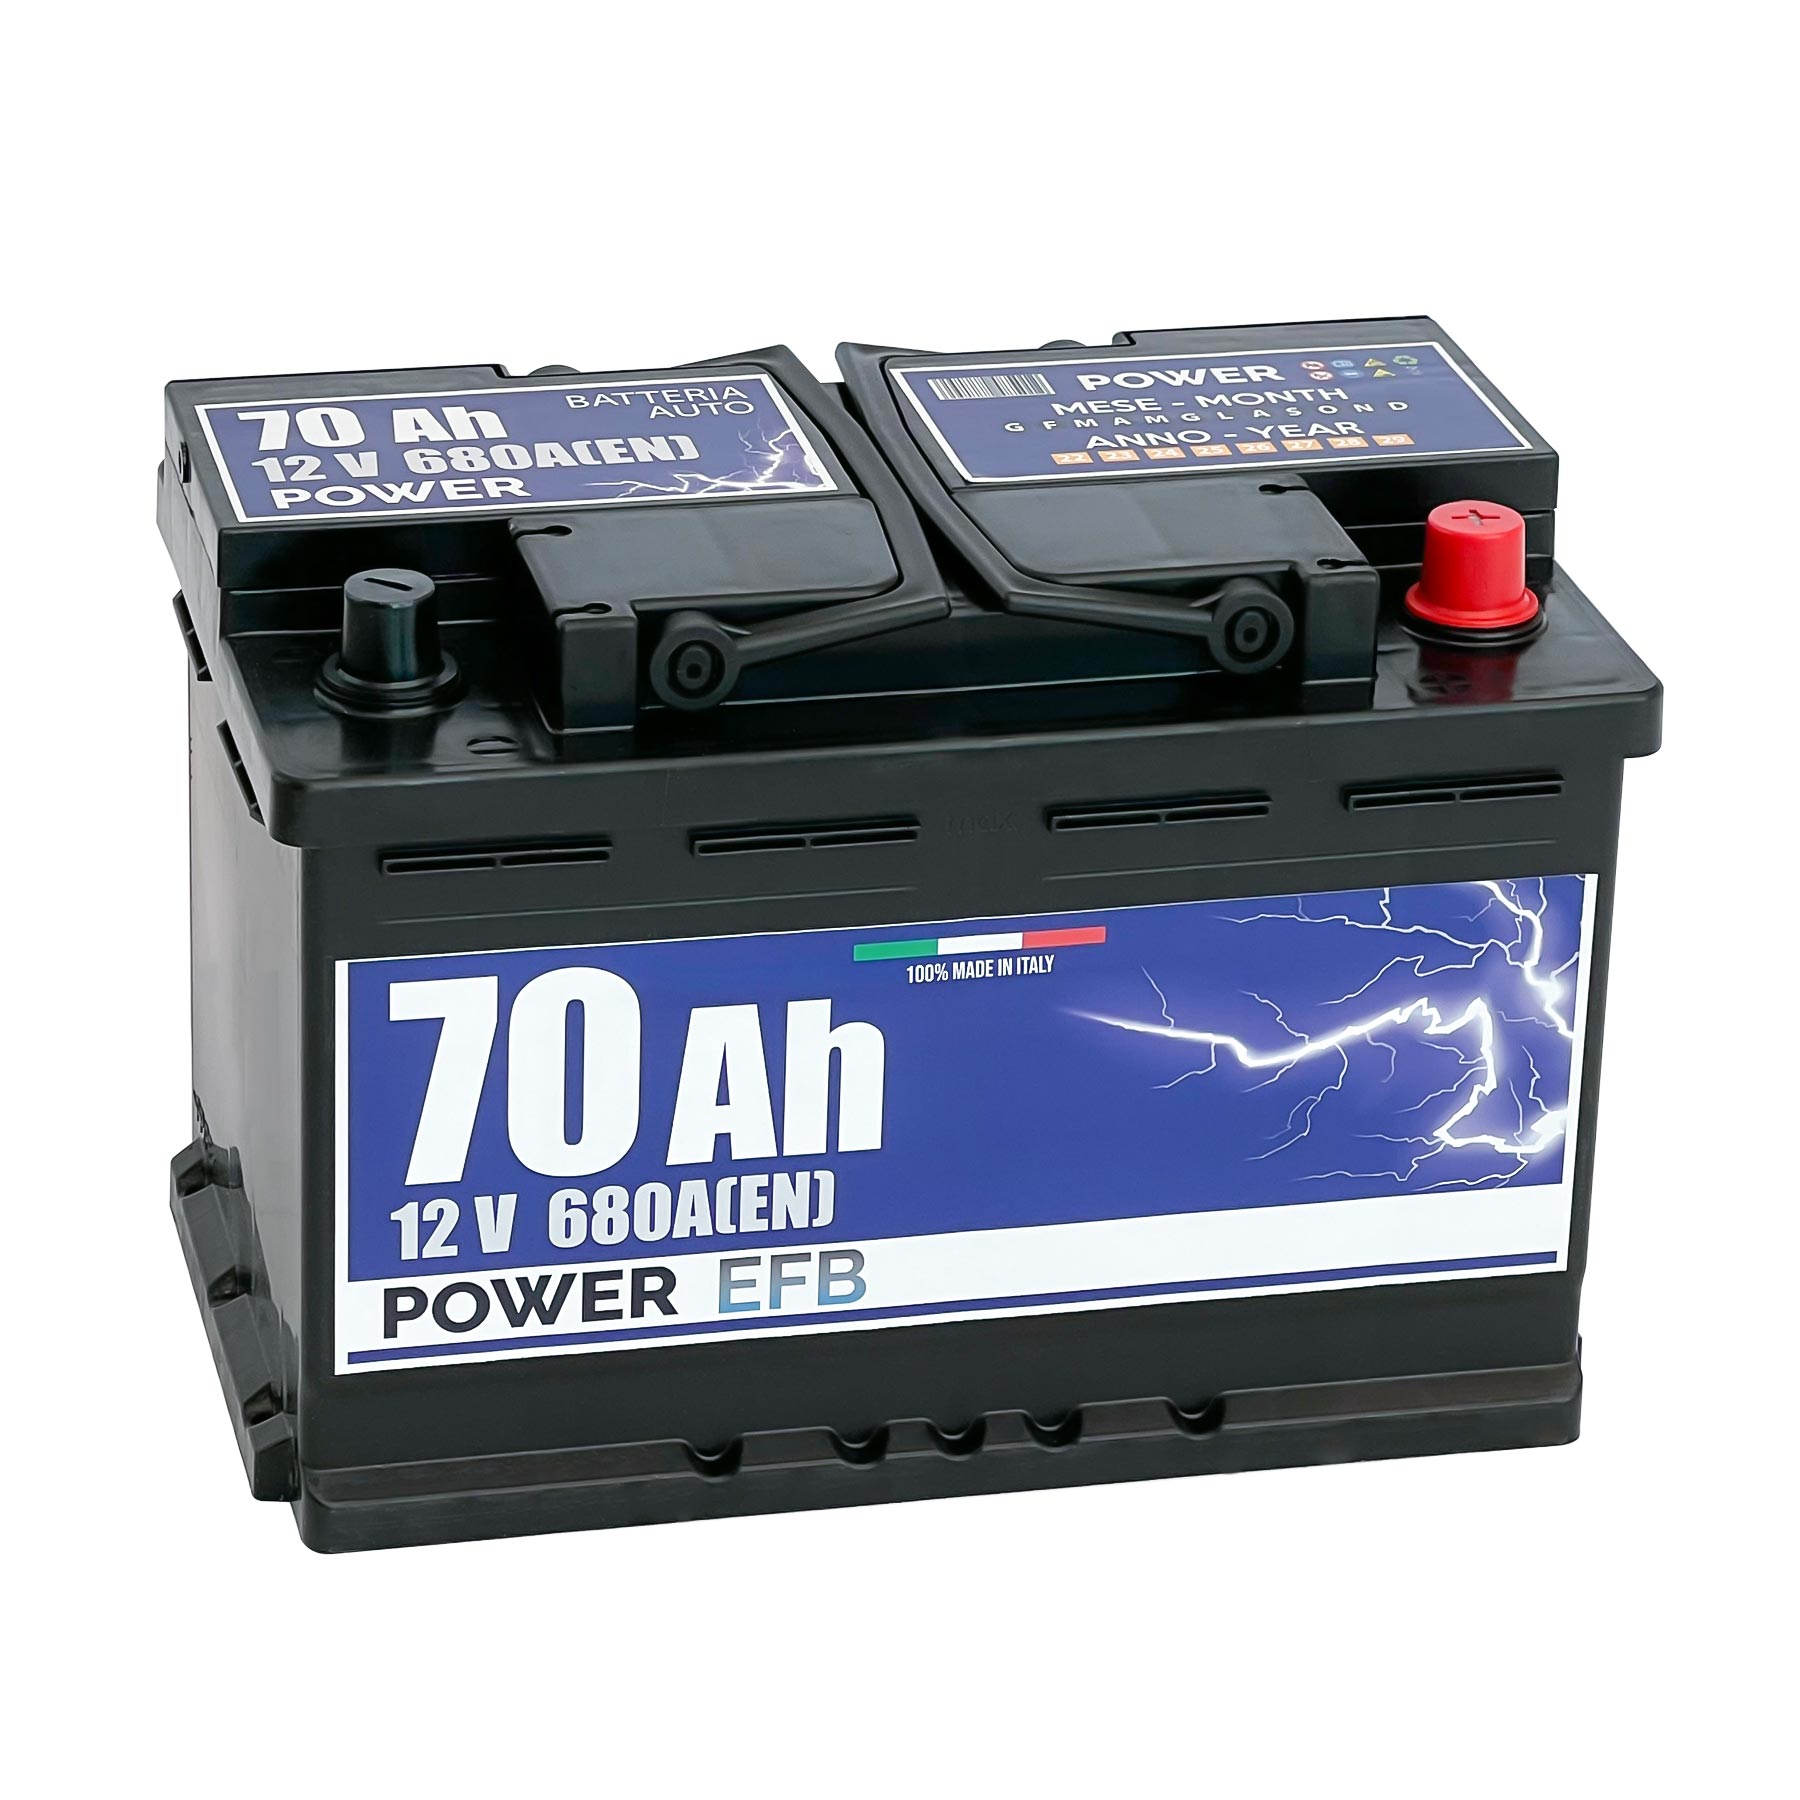 Batteria originale Power EFB PL700, dimensioni 278 x 175 x 190, polo positivo a destra, 12 volt, 70 amperora, 680 ampere, EFB. Batteria per auto e veicoli leggeri con start e stop.